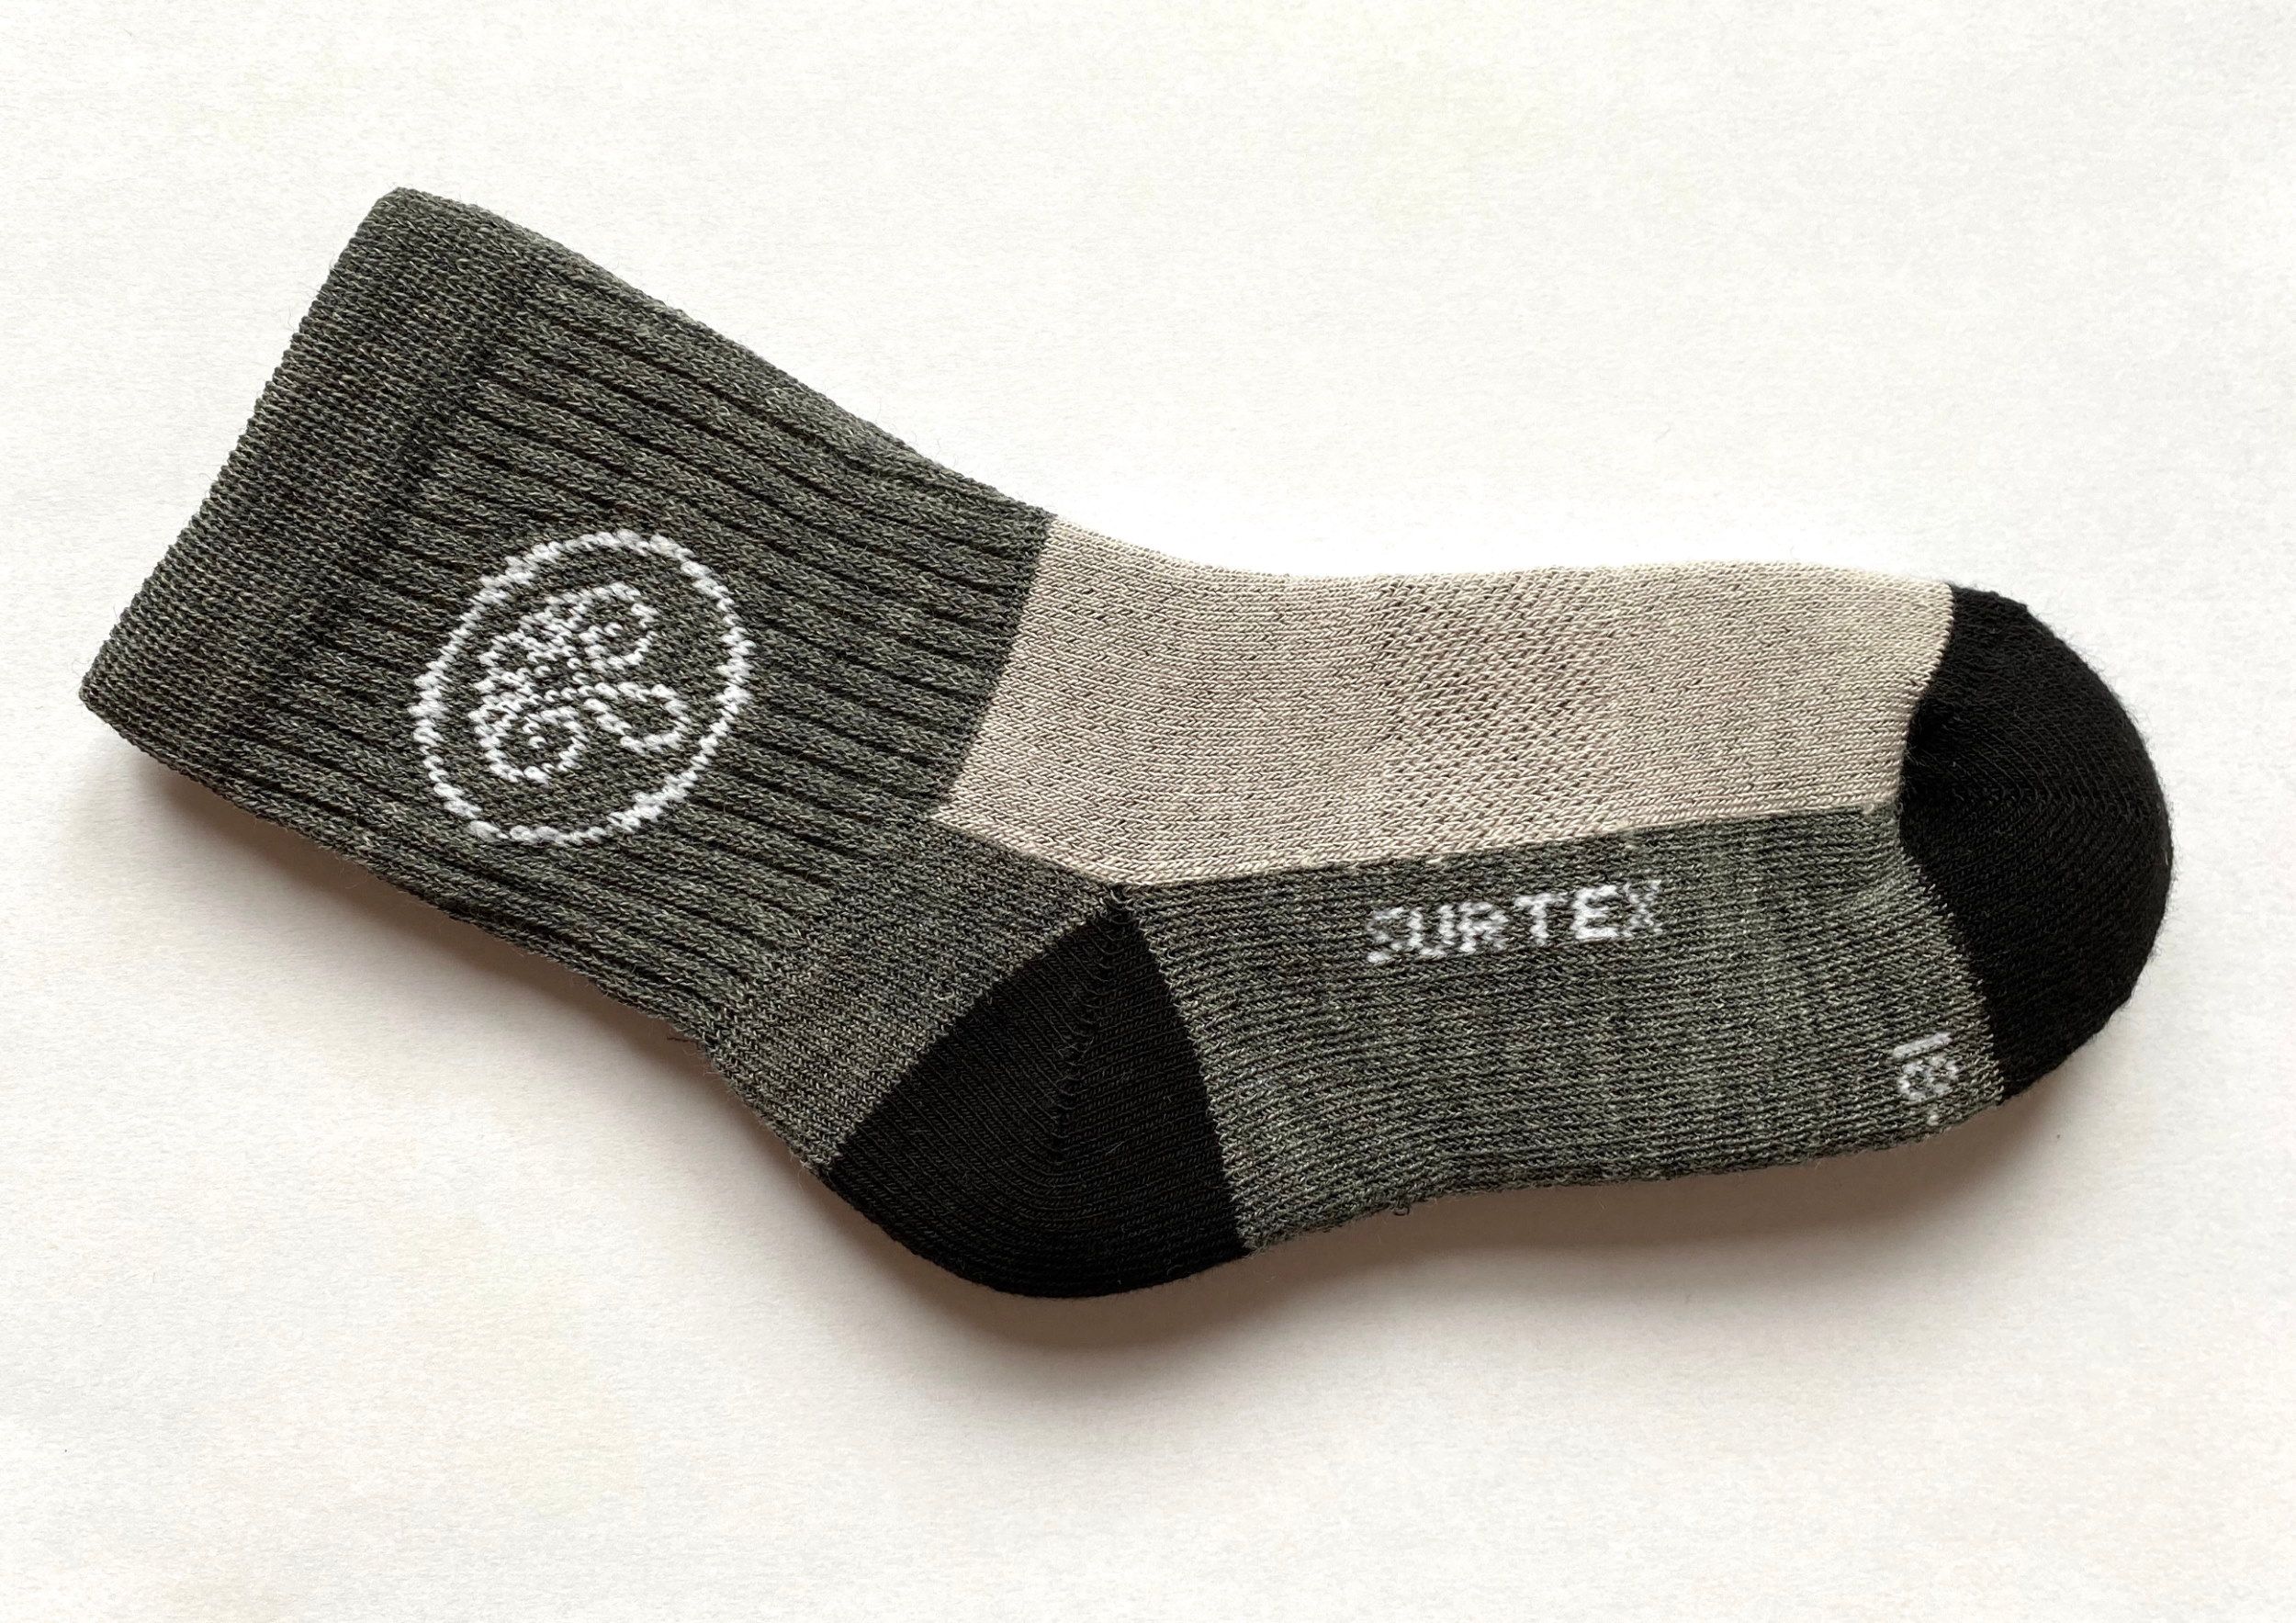 Surtex froté ponožky 80% merino - šedé 20-23 140-150 - obrázek 1